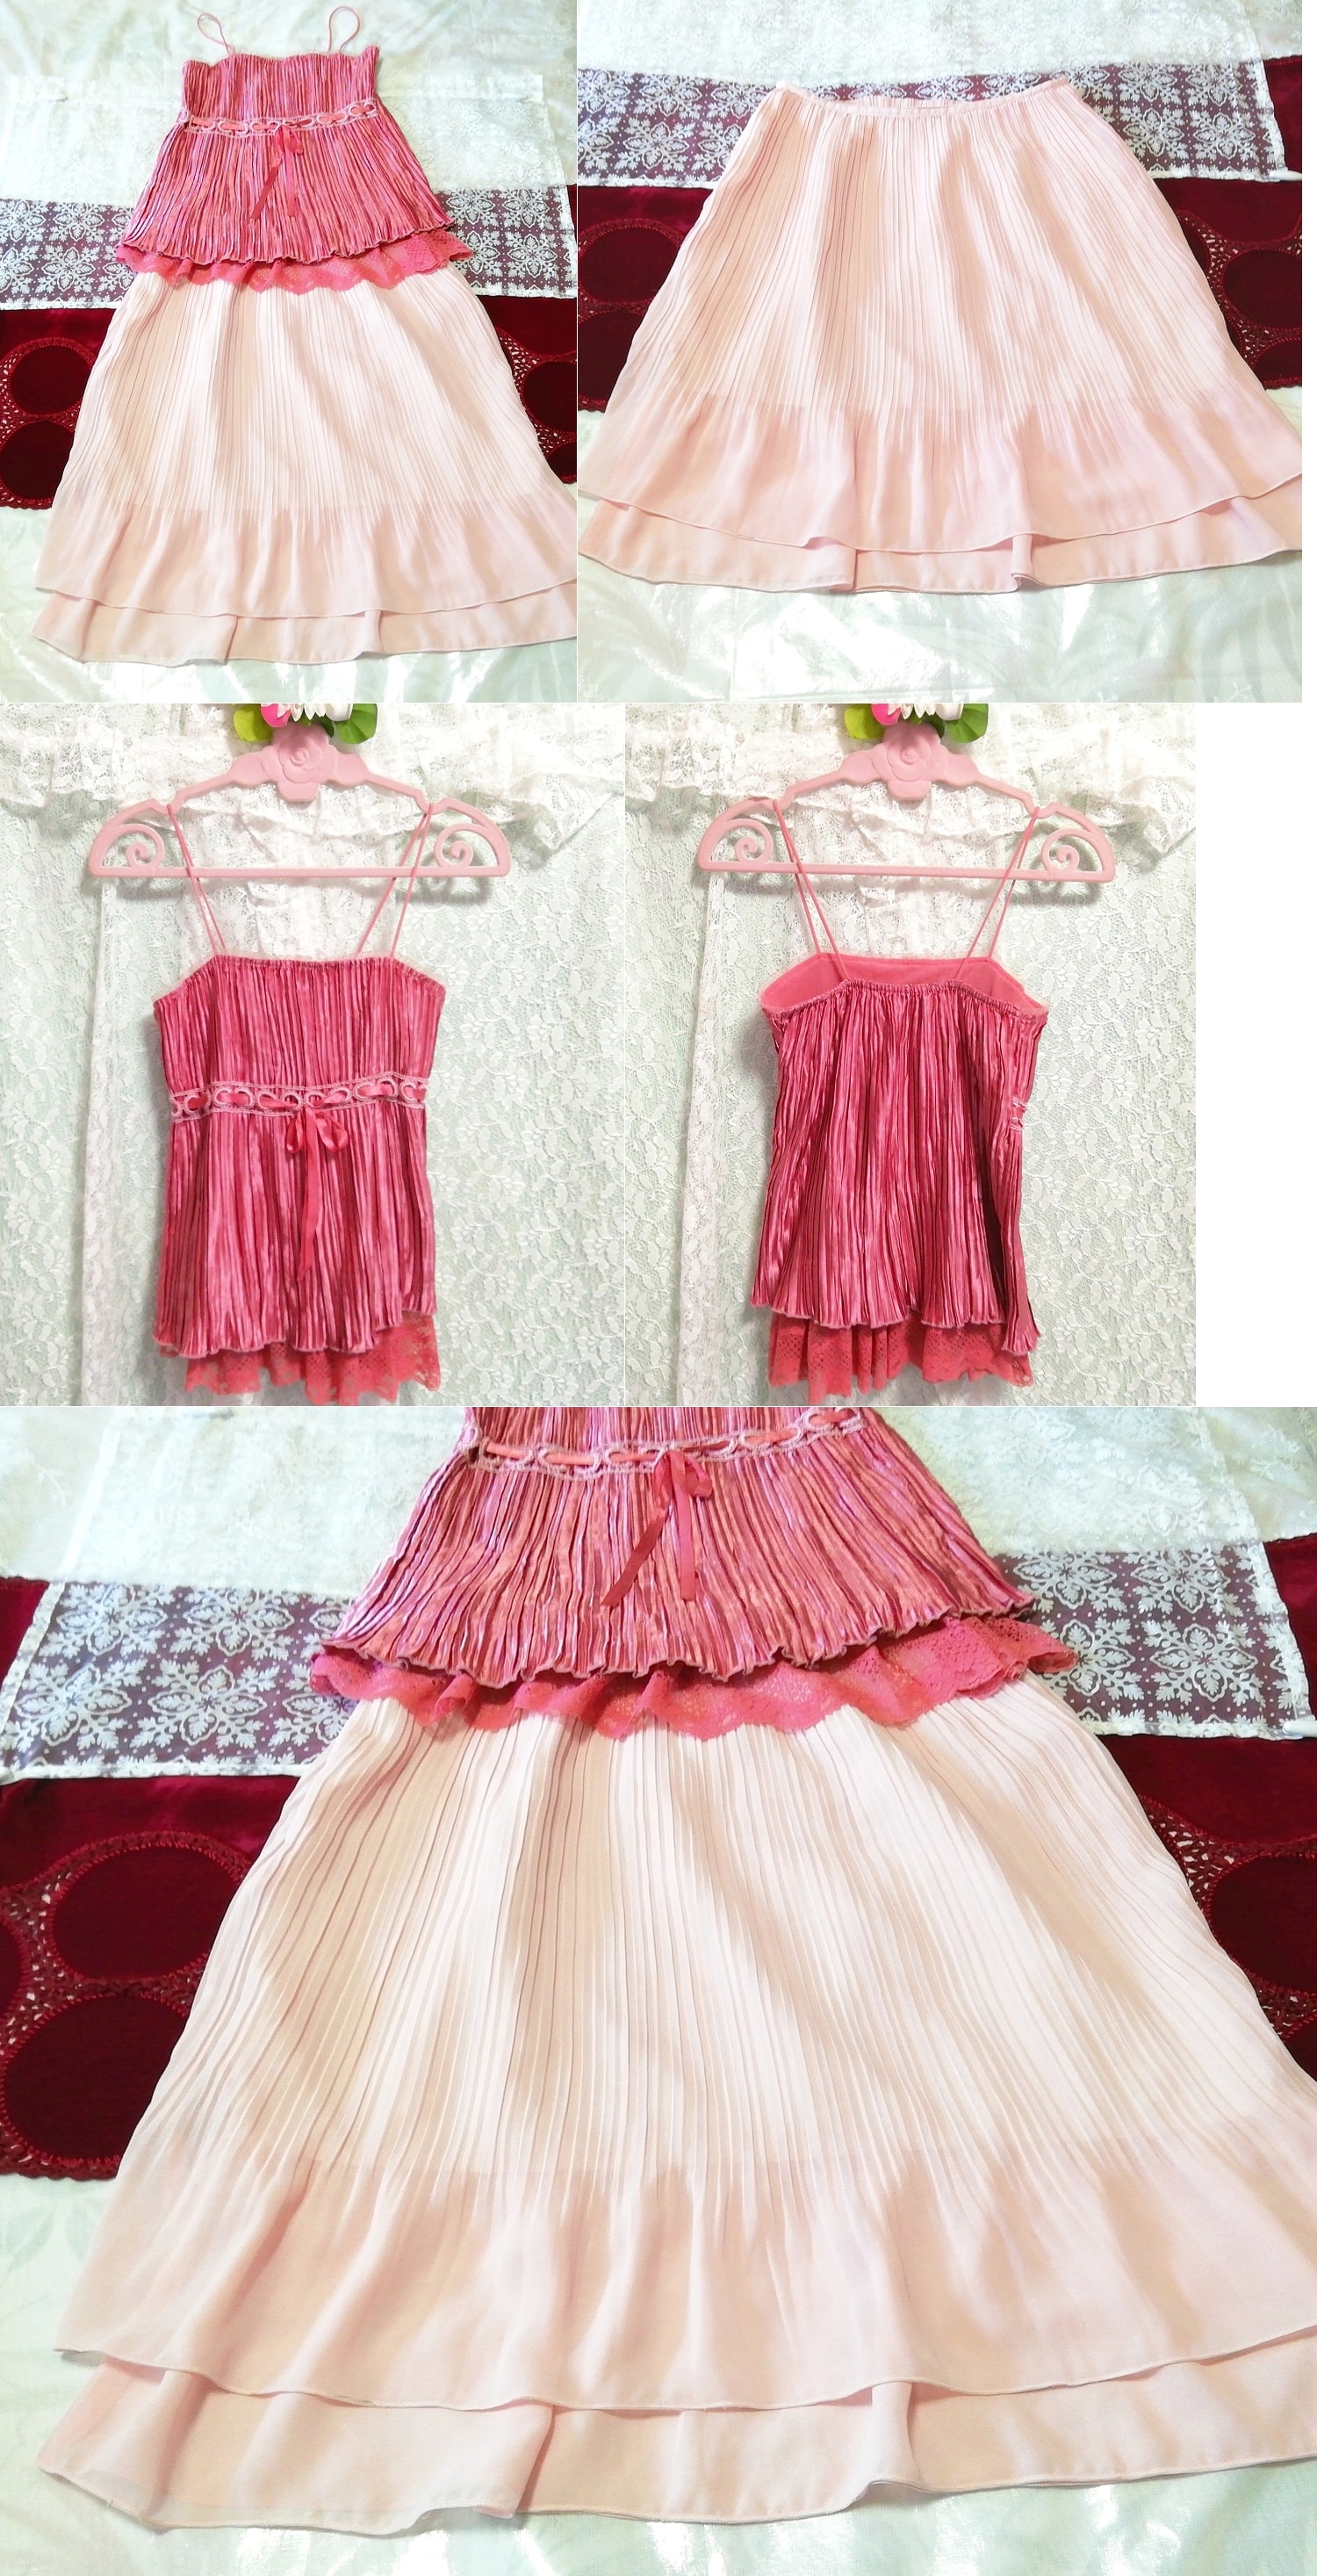 Chemise de nuit déshabillée camisole en dentelle de satin rose jupe plissée en mousseline de soie rose 2P, mode, mode féminine, vêtement de nuit, pyjamas